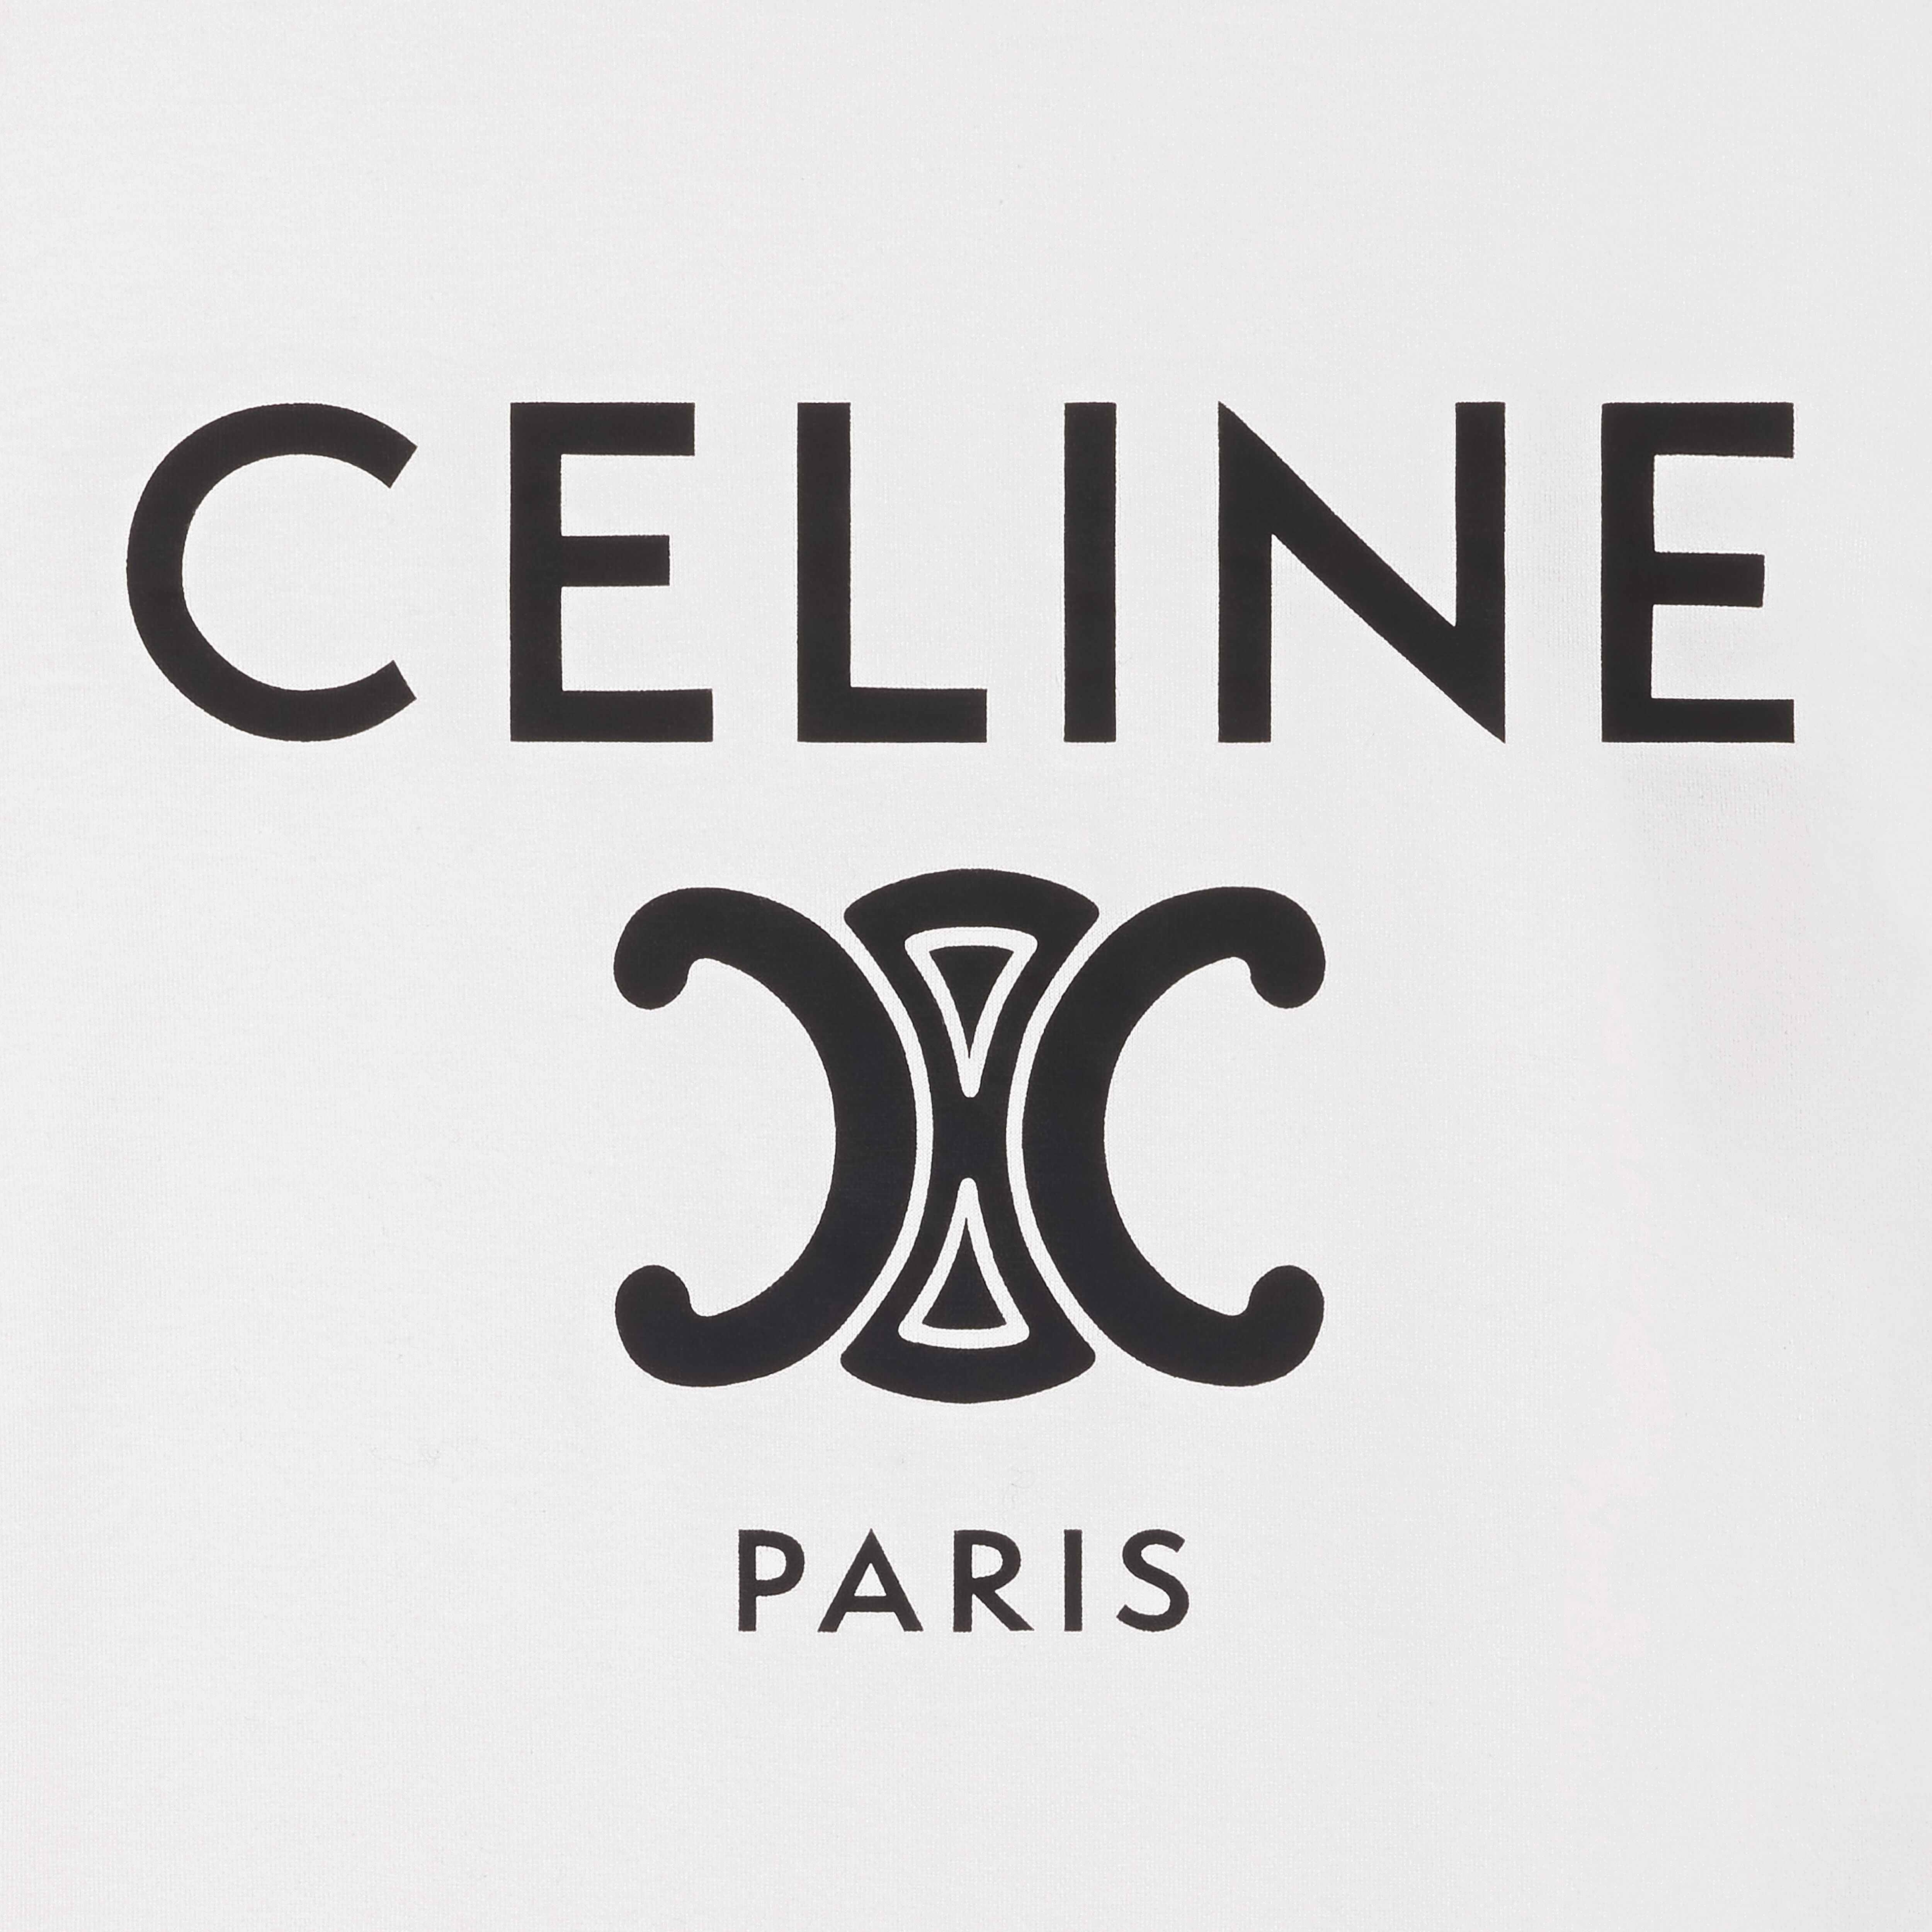 celine paris 70's T-shirt in cotton jersey